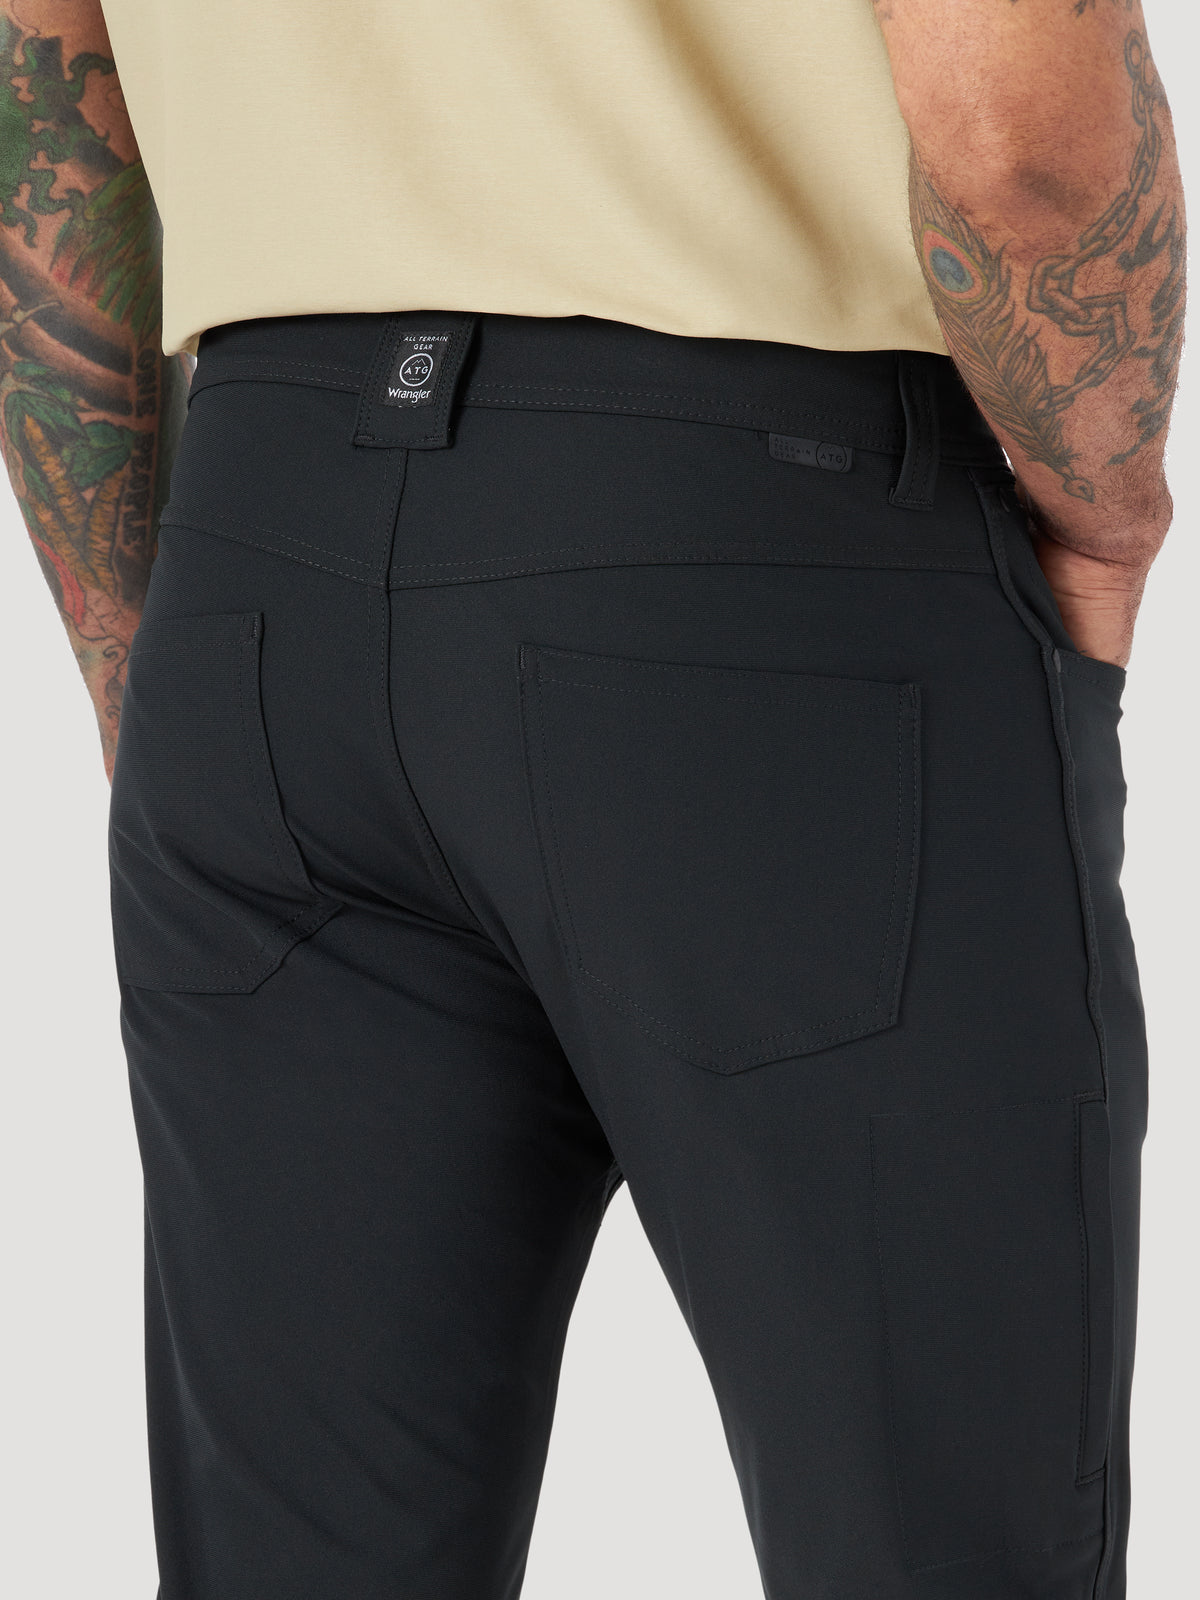 FWDS 5 Pocket Pant in Black